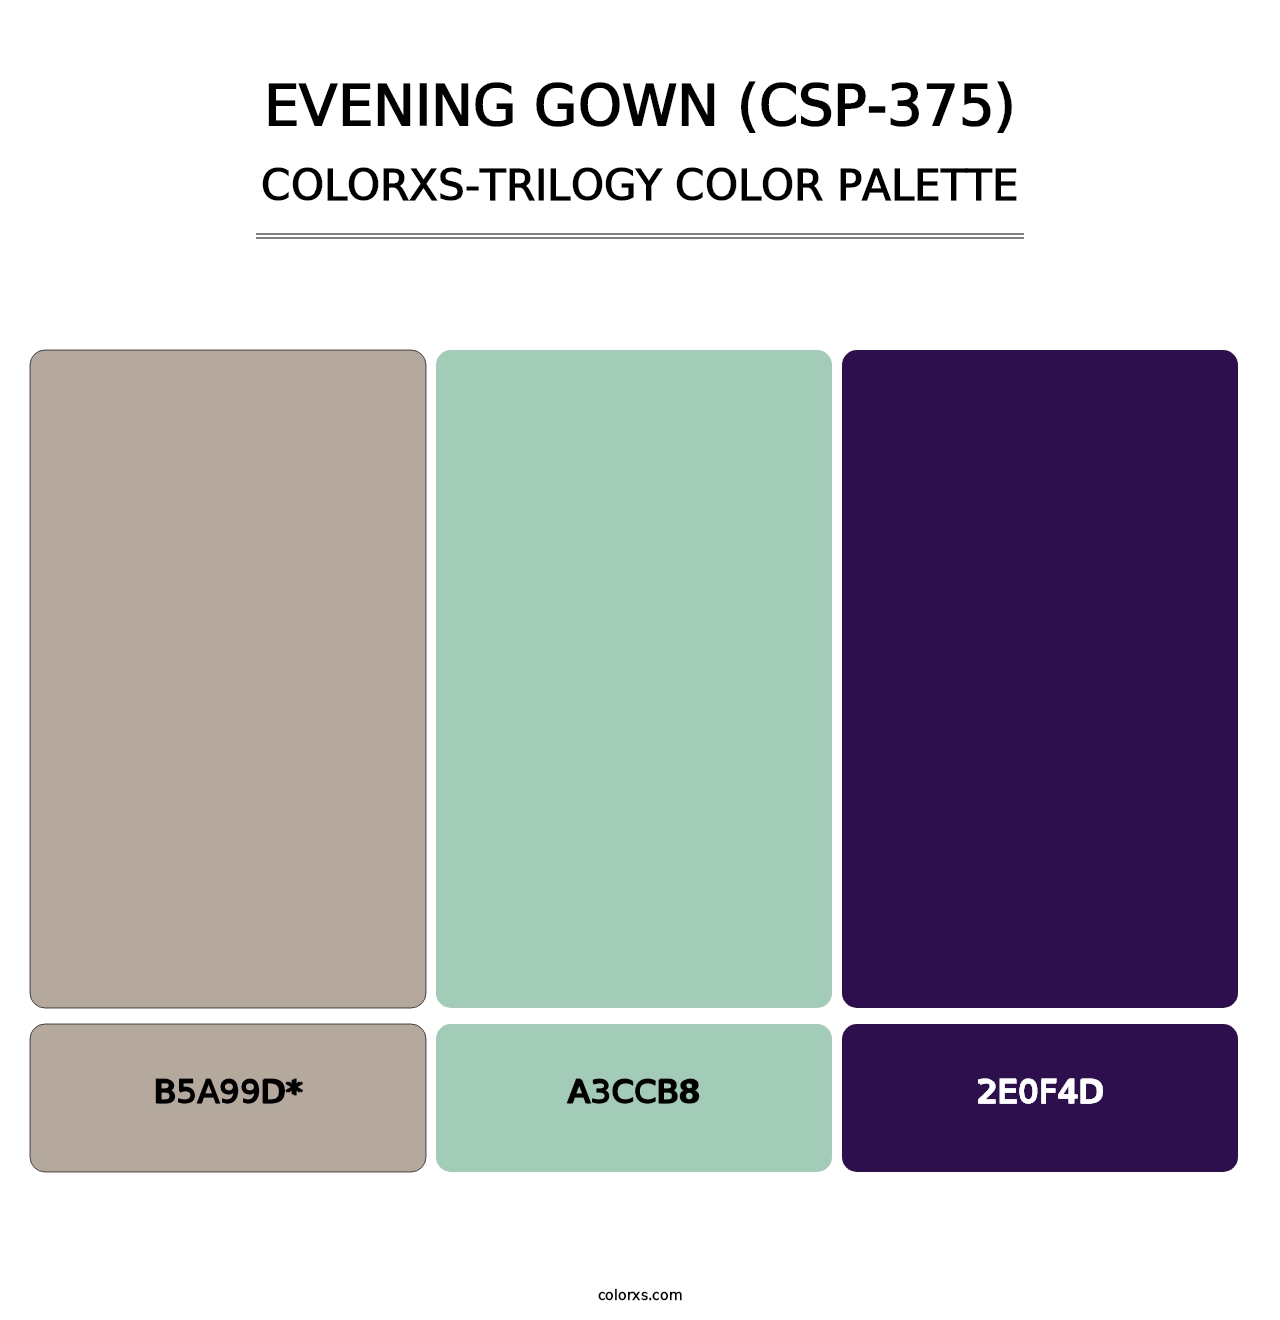 Evening Gown (CSP-375) - Colorxs Trilogy Palette